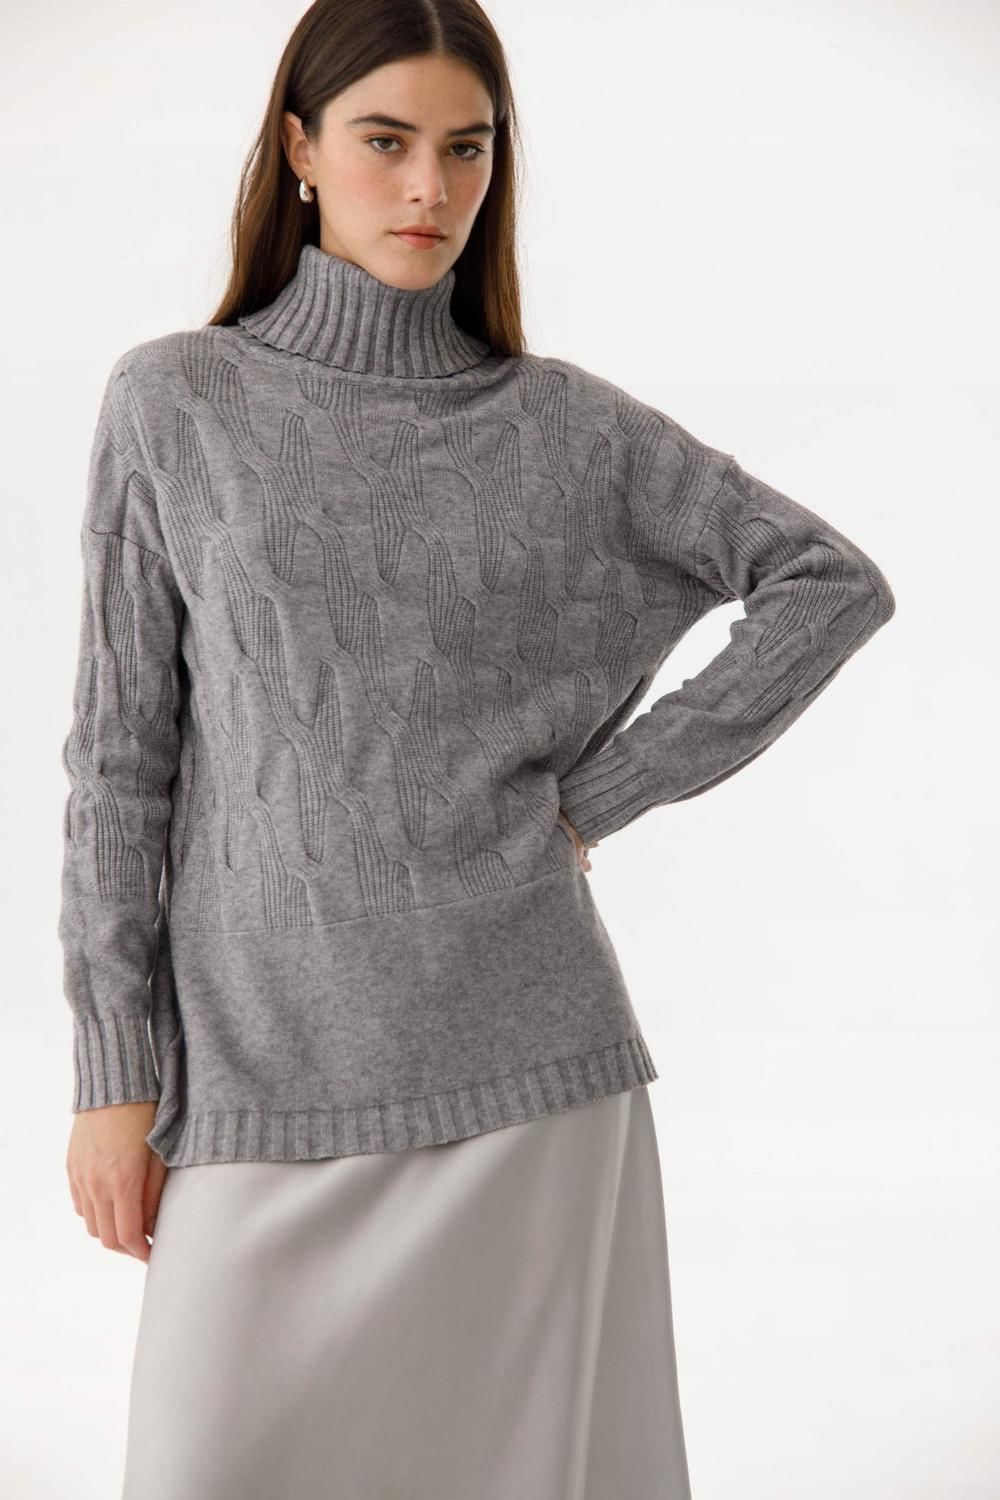 Sweater Poleron Liz